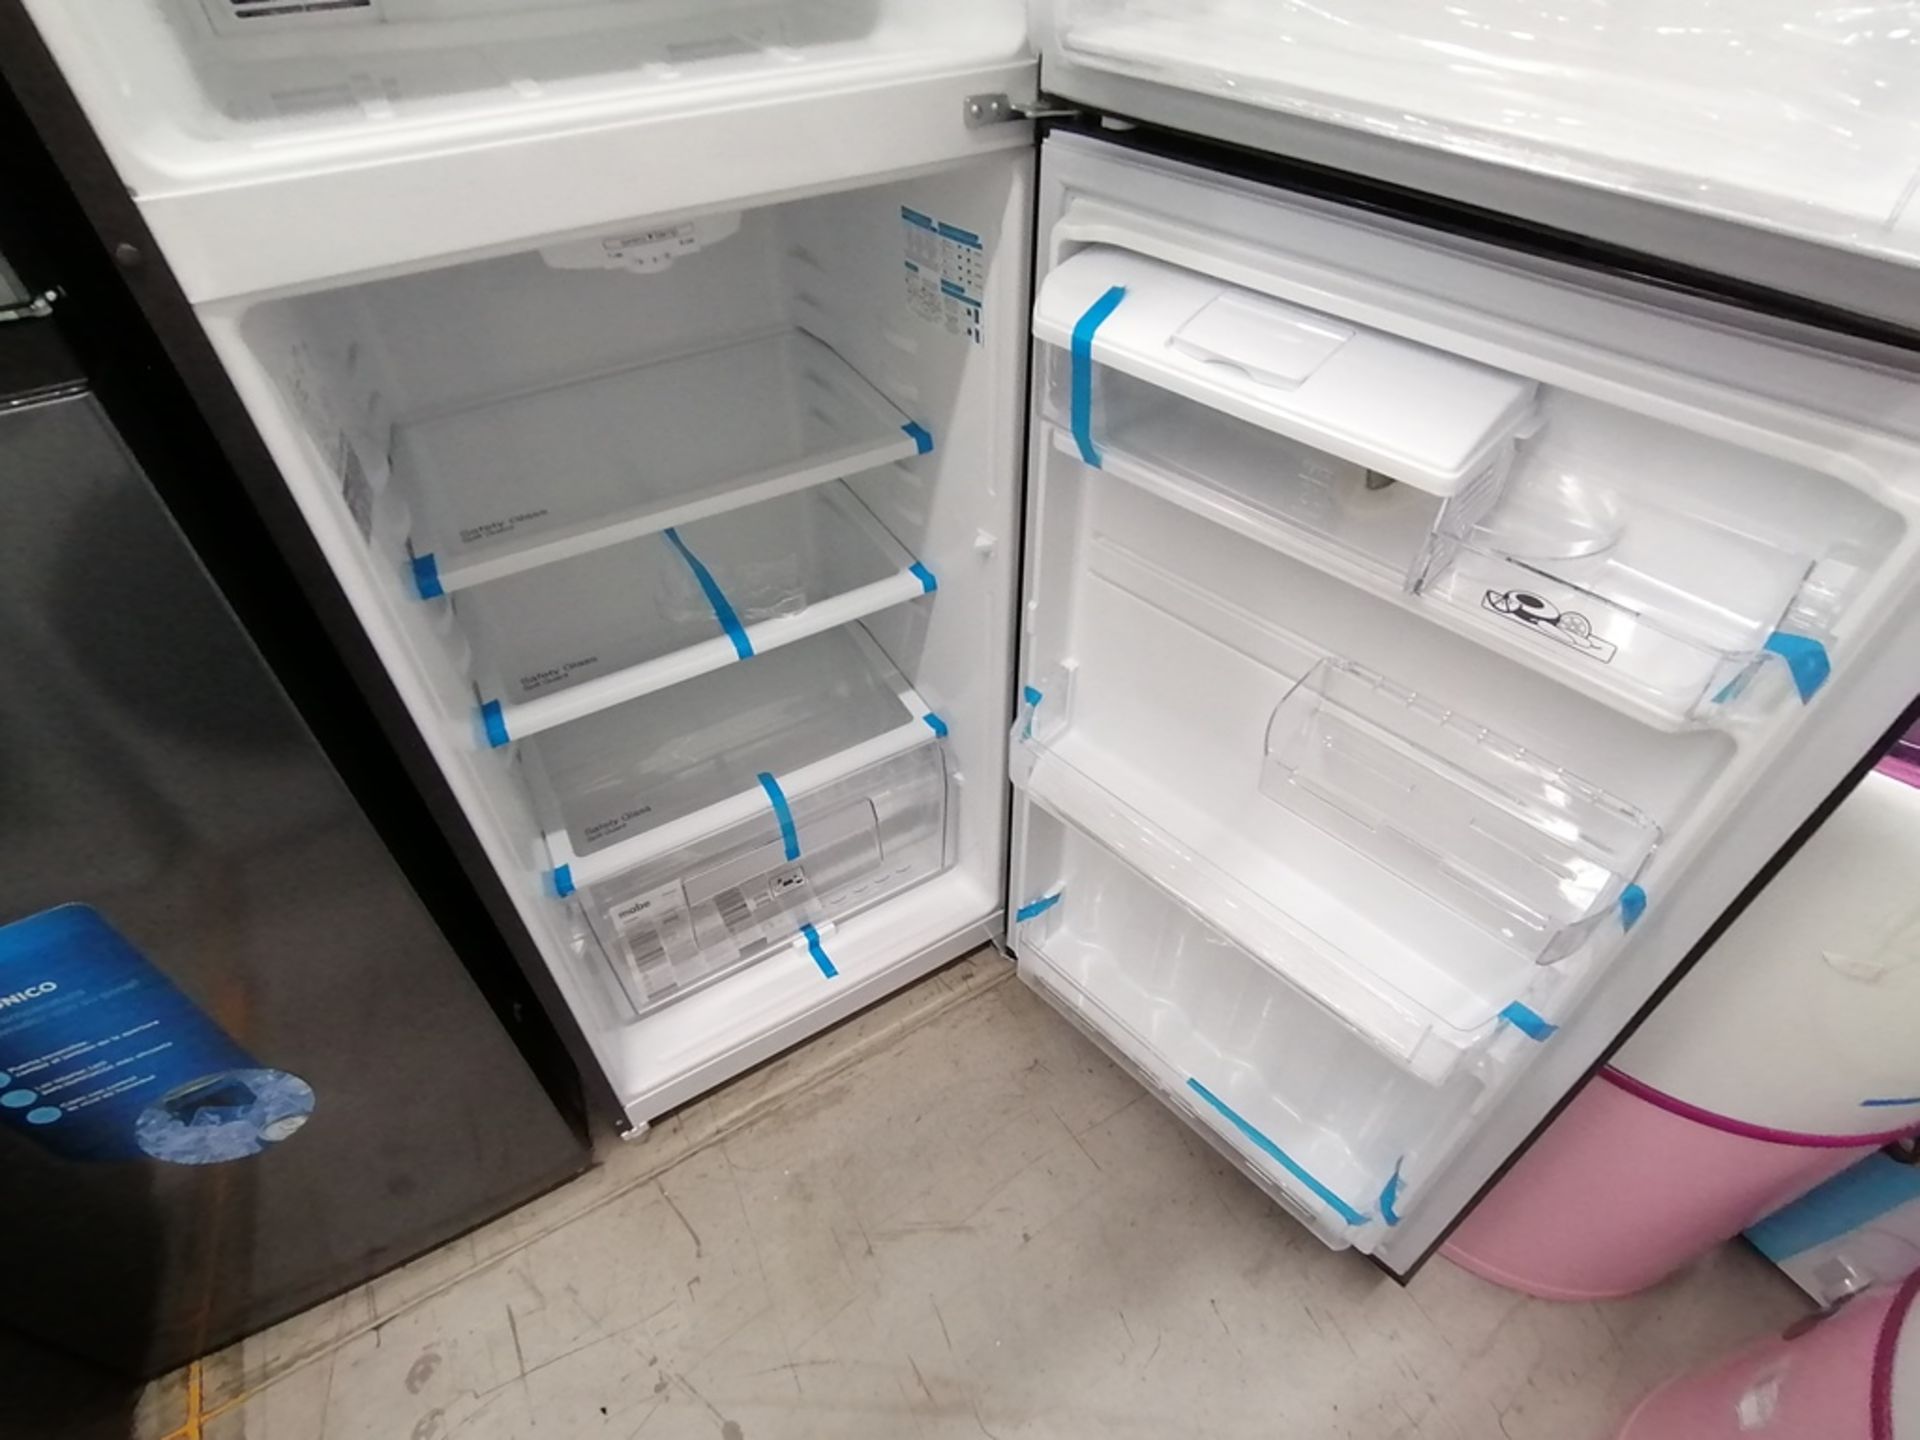 Lote de 2 refrigeradores incluye: 1 Refrigerador, Marca Midea, Modelo MRTN09G2NCS, Serie 341B261870 - Image 14 of 15